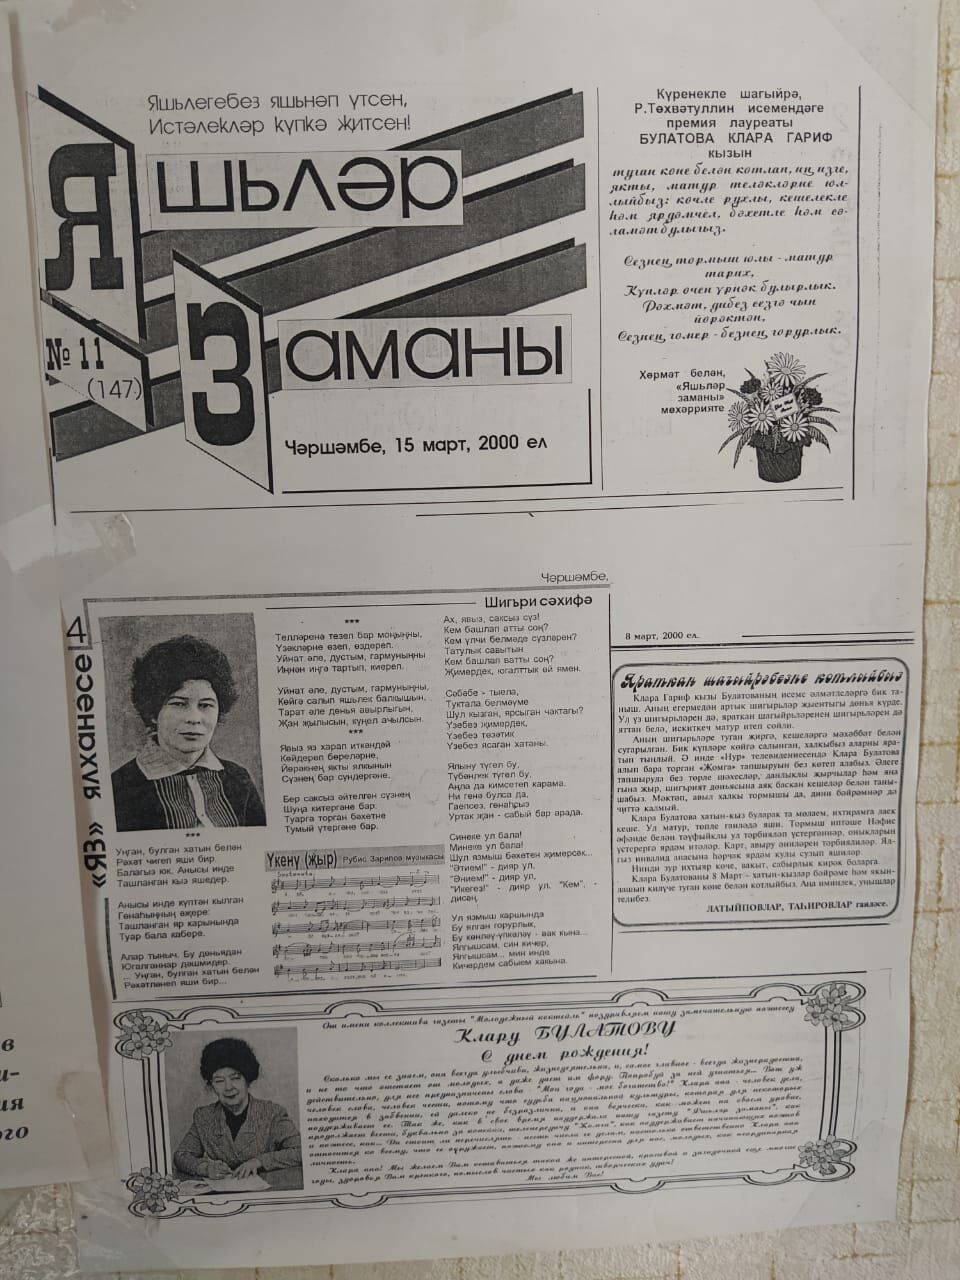 Клара Булатова музеен яшәгән йортында ясаган